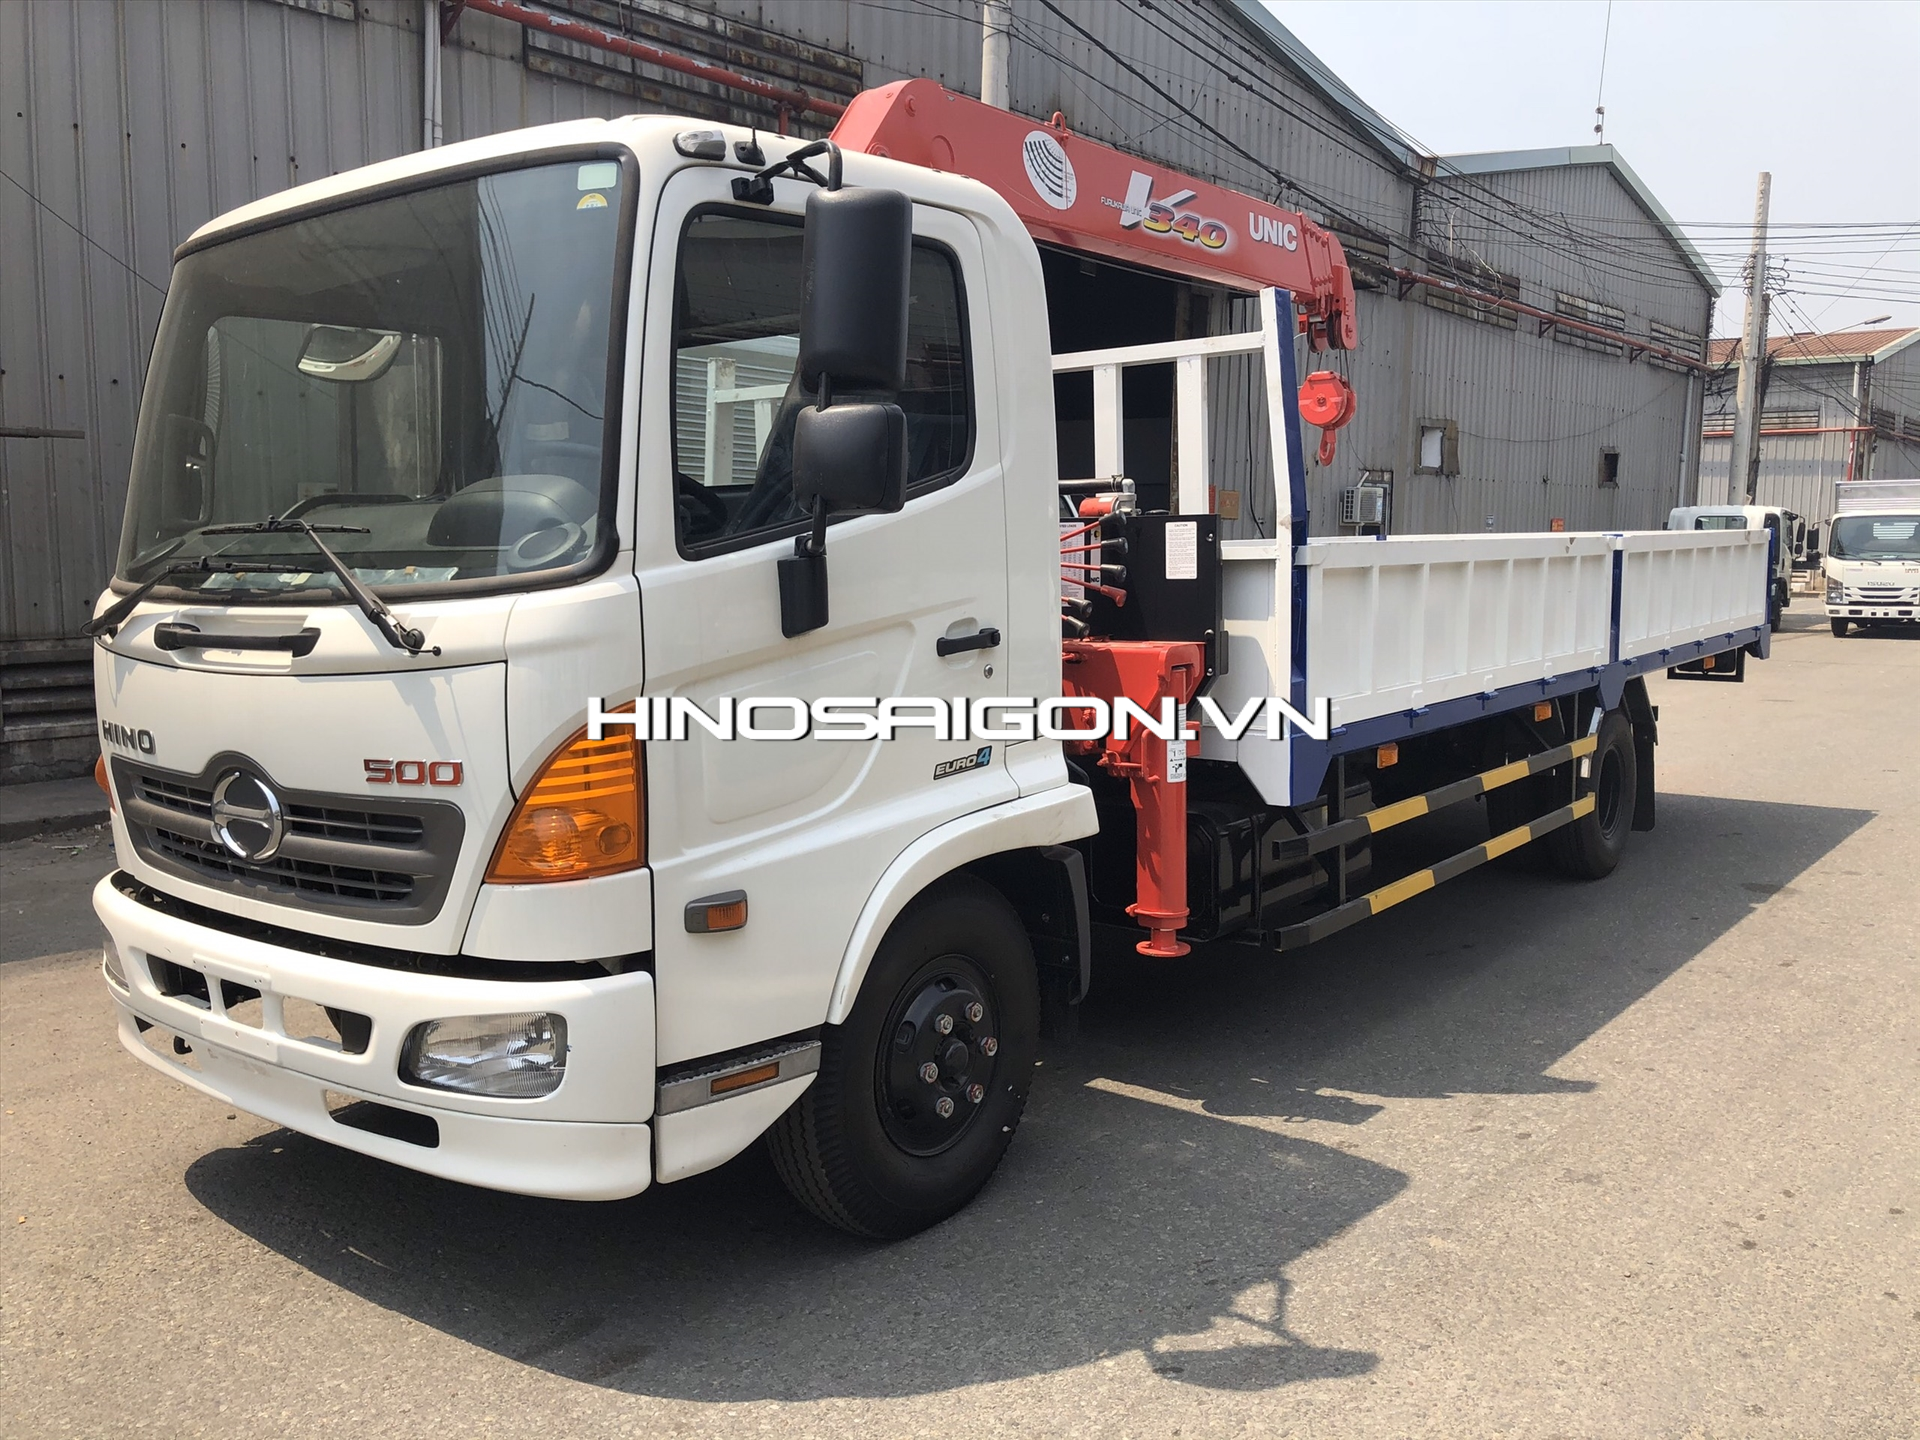 Hinosaigon.vn - Cập nhật các dòng xe tải gắn cẩu mới nhất năm 2020